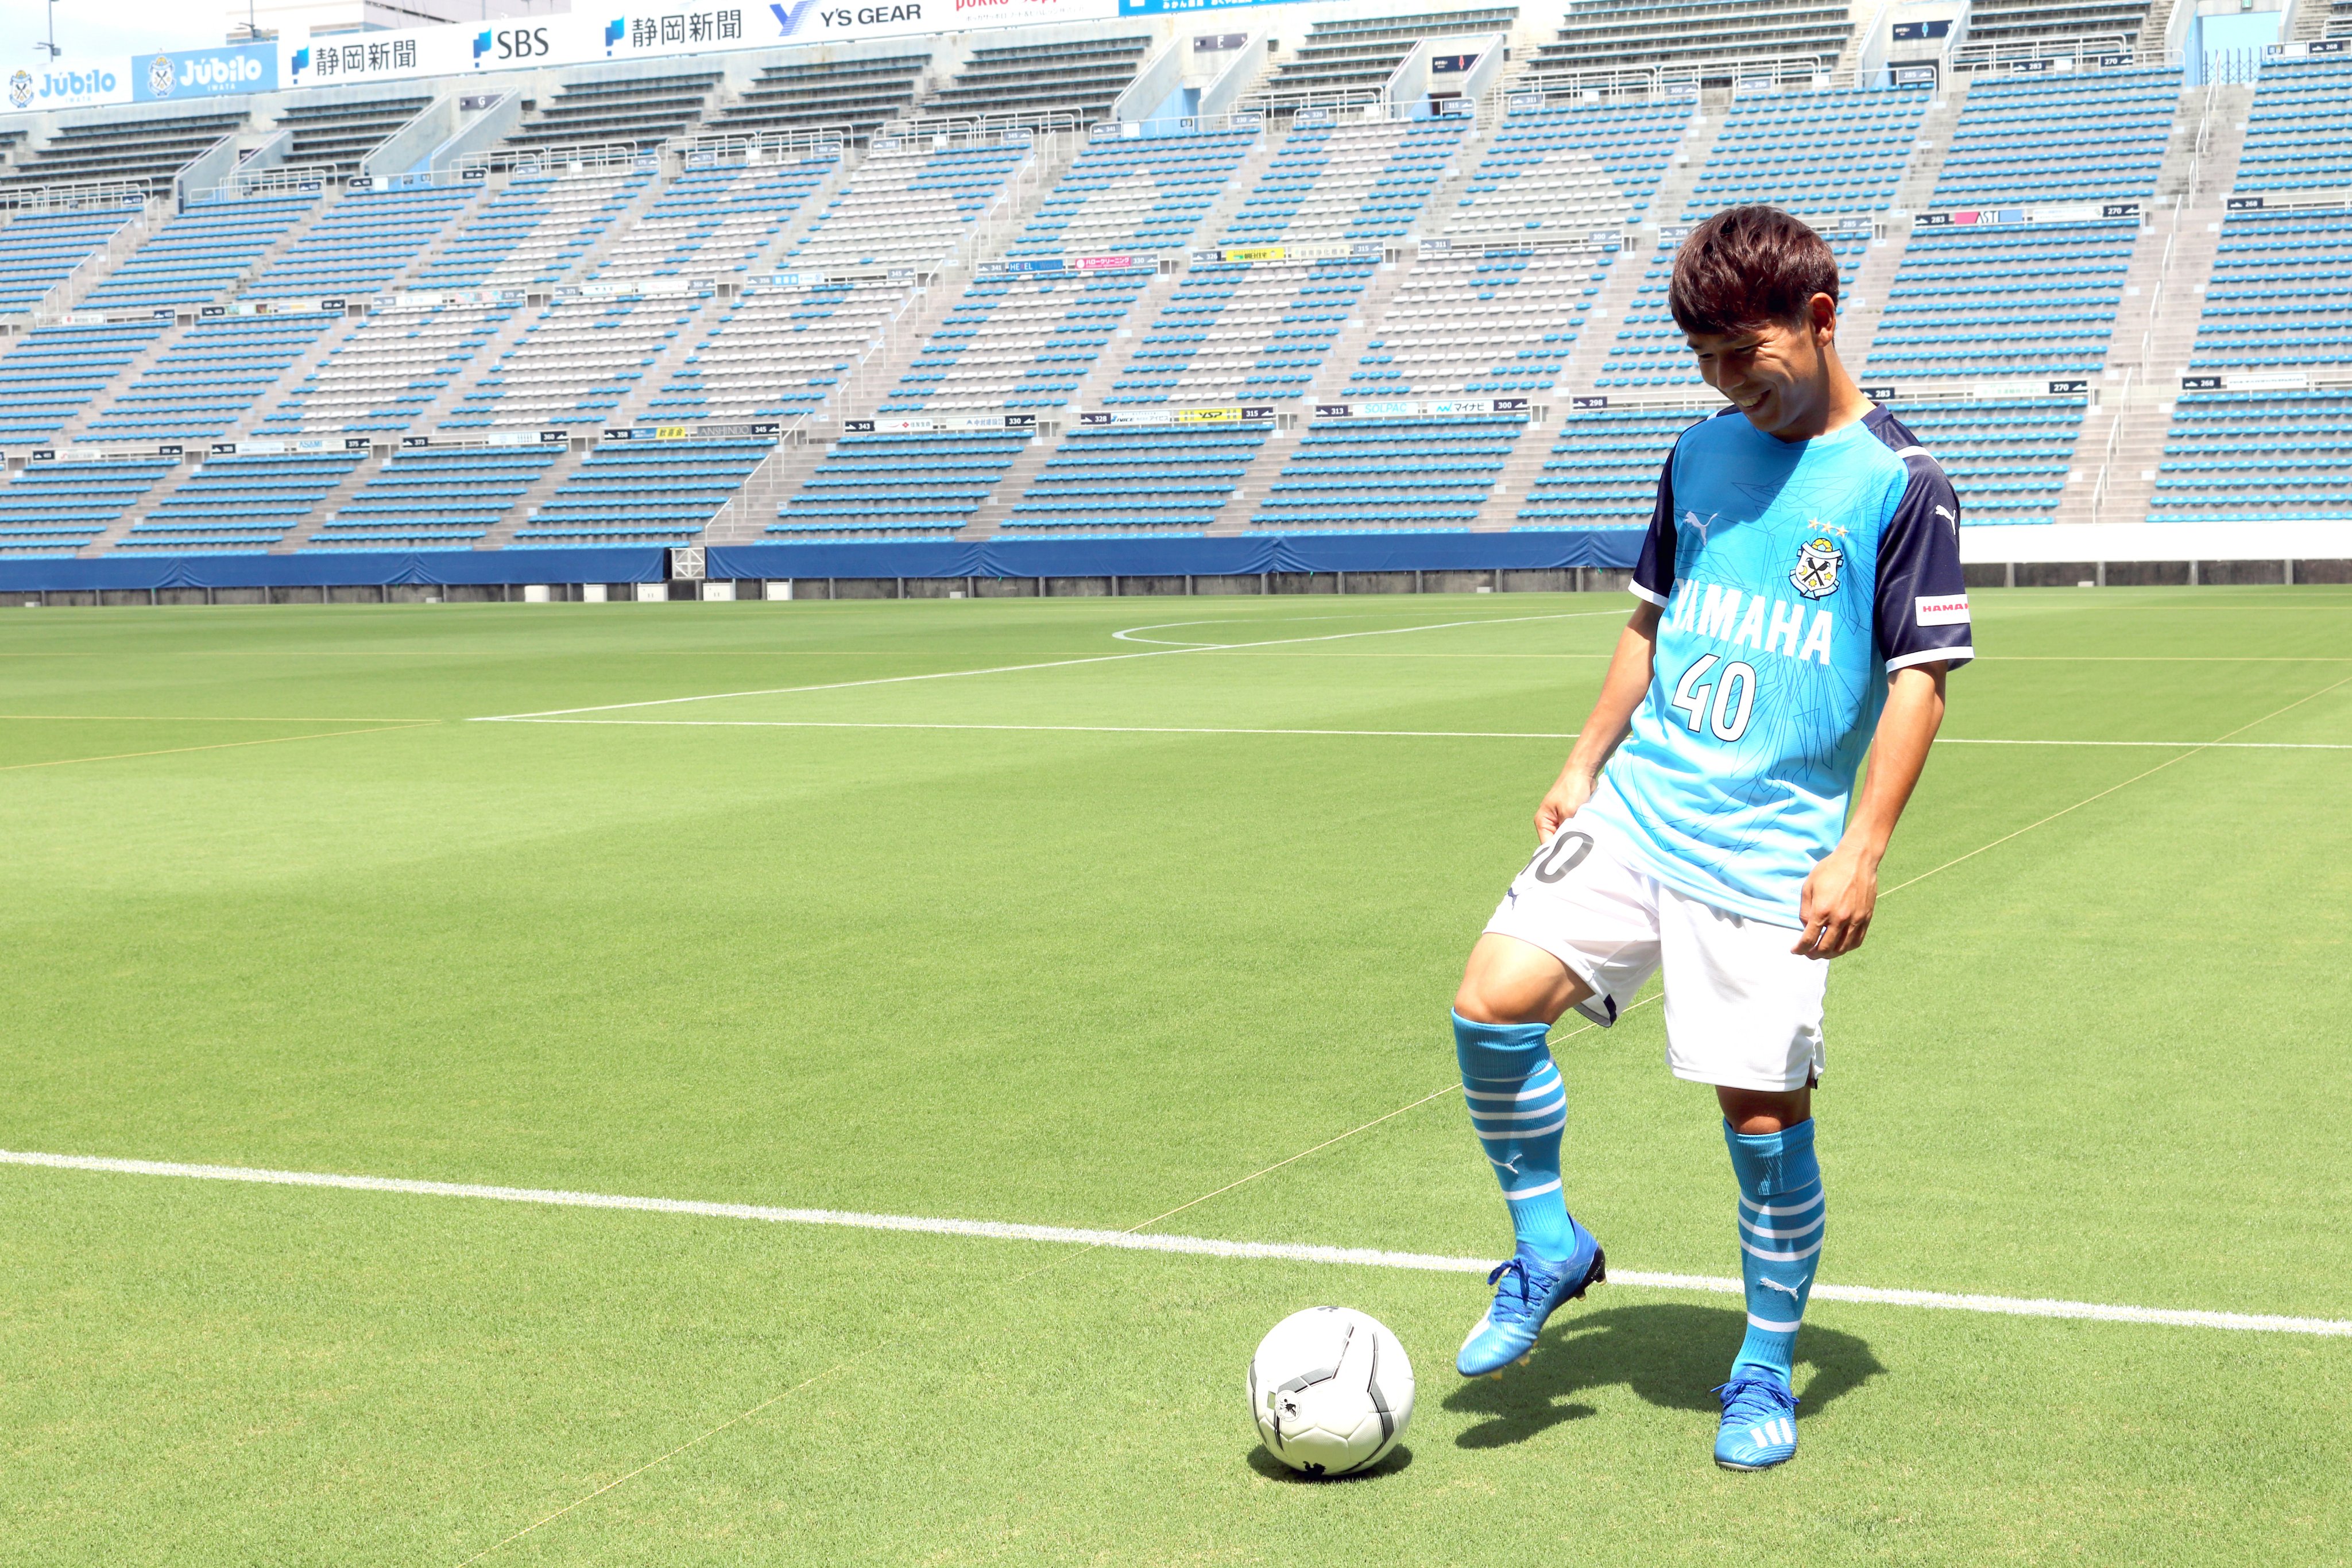 ジュビロ磐田 本日 金子翔太選手のオフィシャル写真撮影を行いました Twitterではオフショットをお届けします T Co 26kqj2keor Twitter